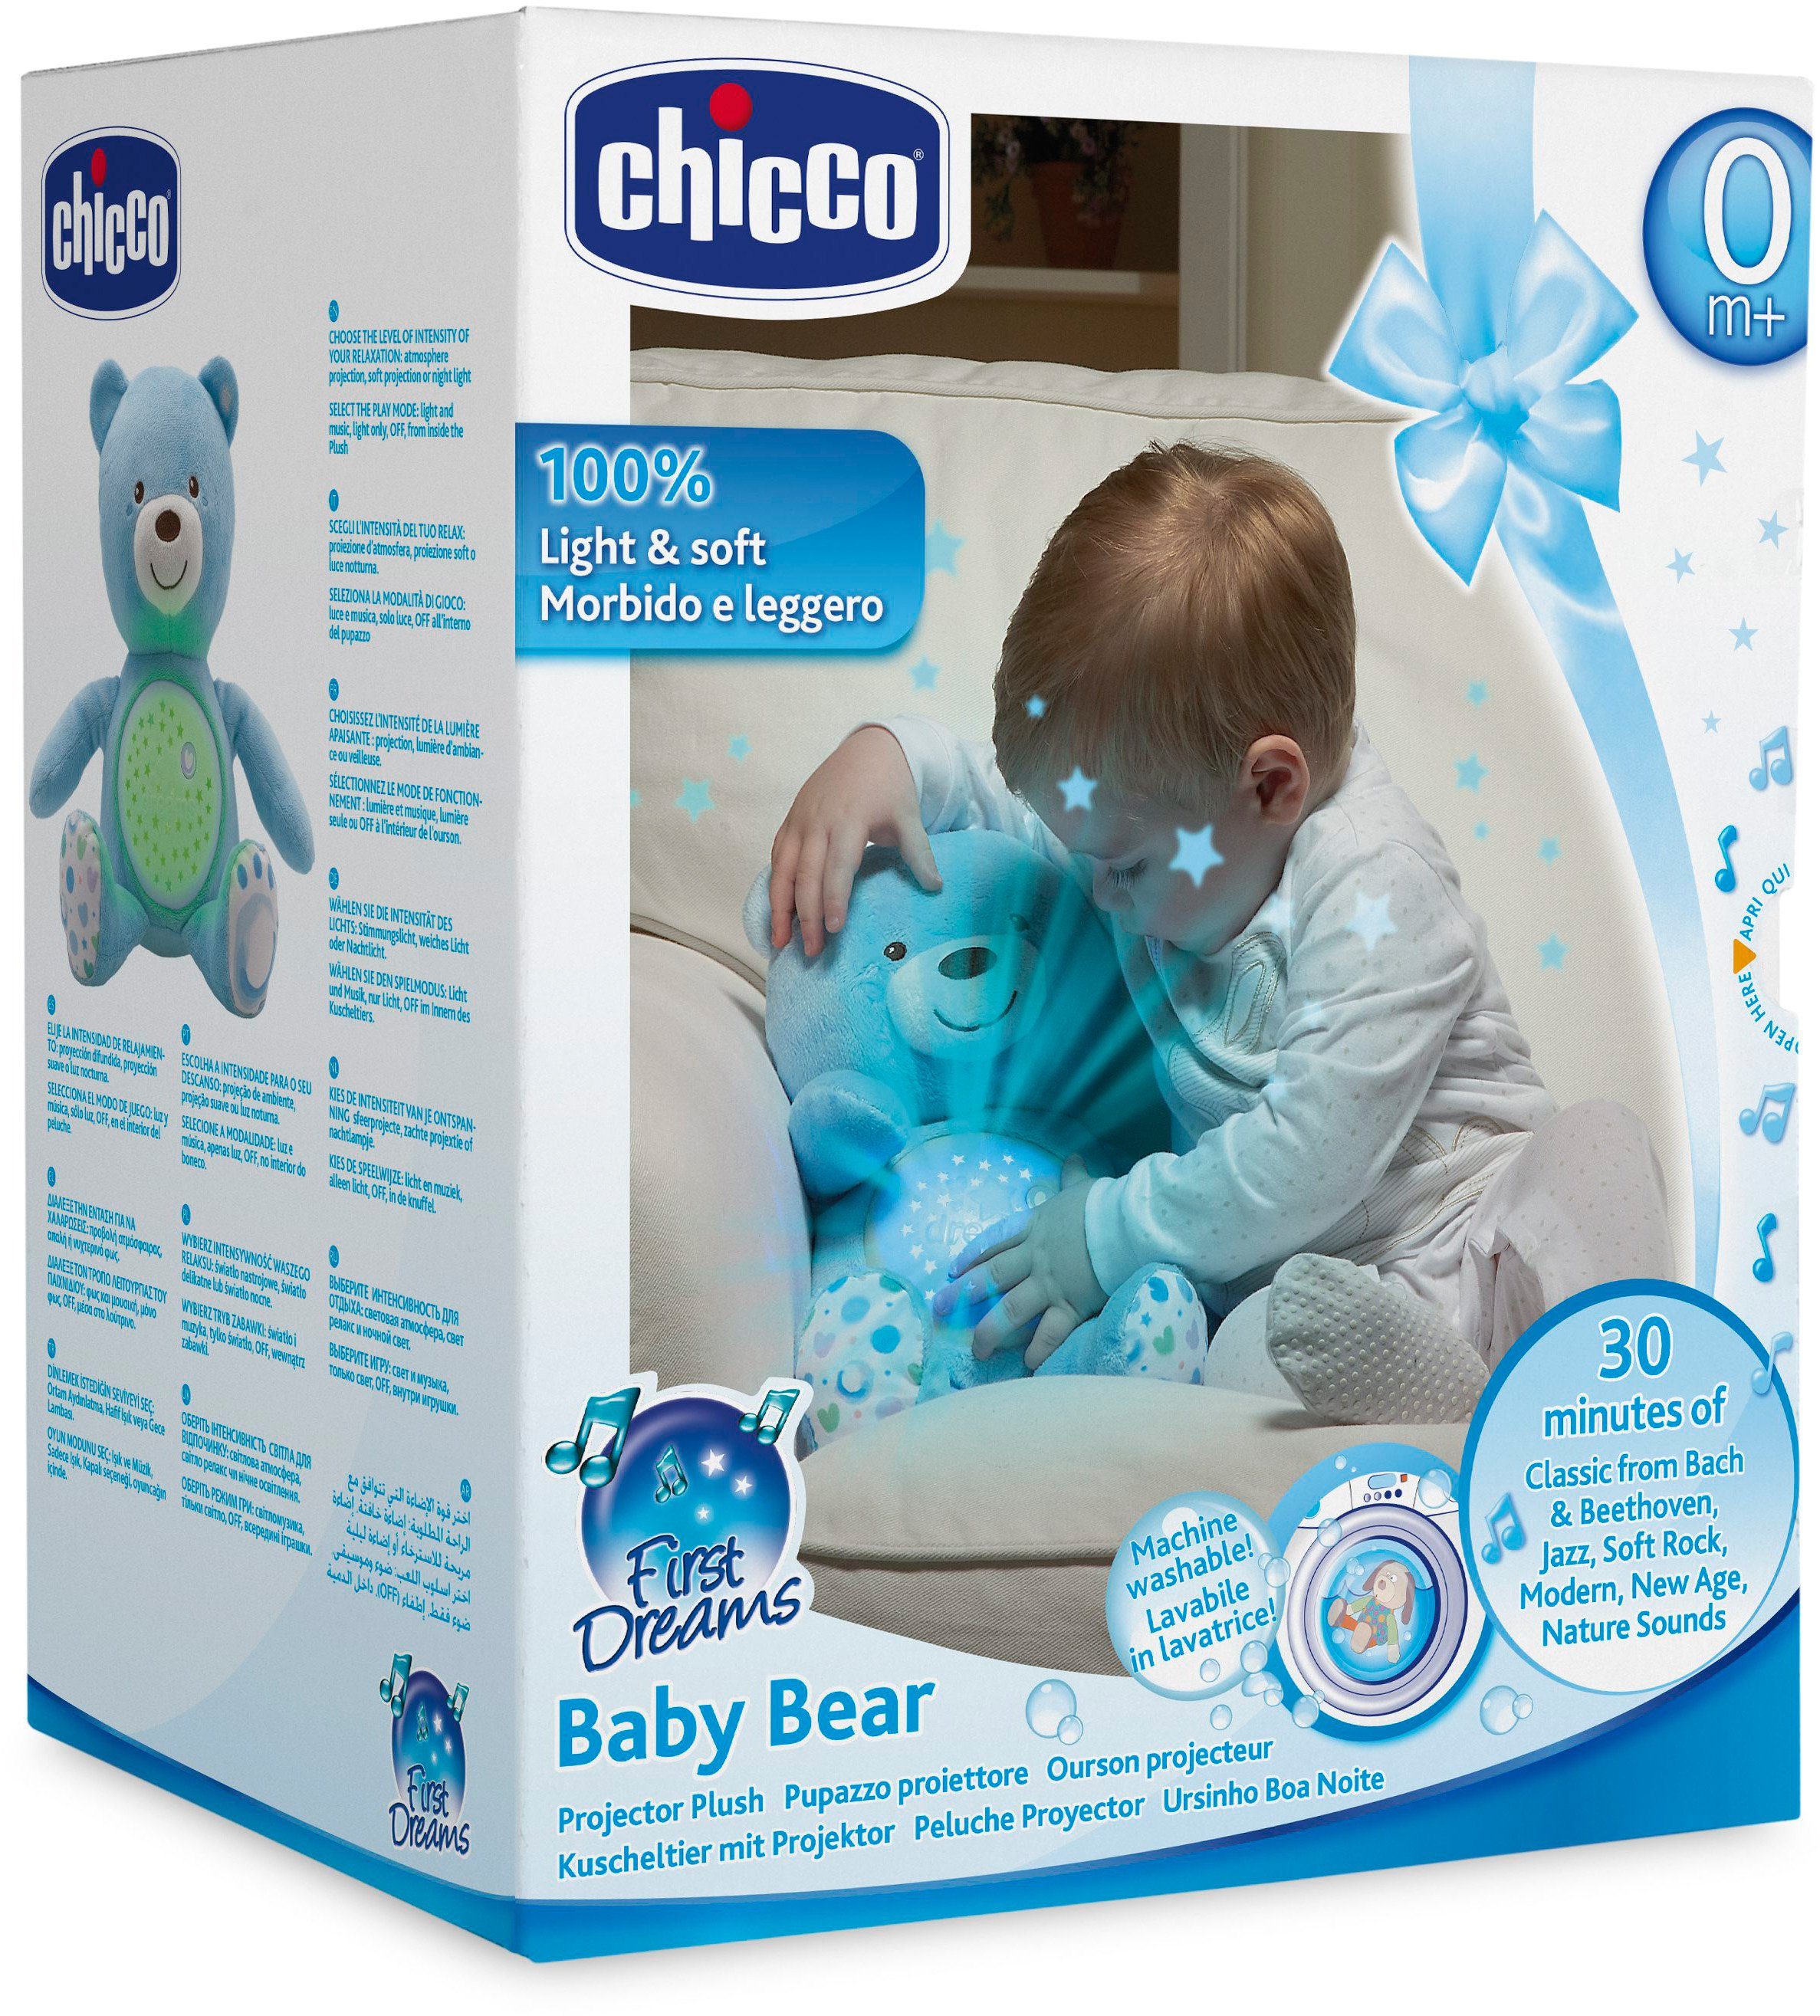 Baby First mit Chicco Hellblau, Dreams Kuscheltier Soundfunktion Lichtprojektion Bär, und